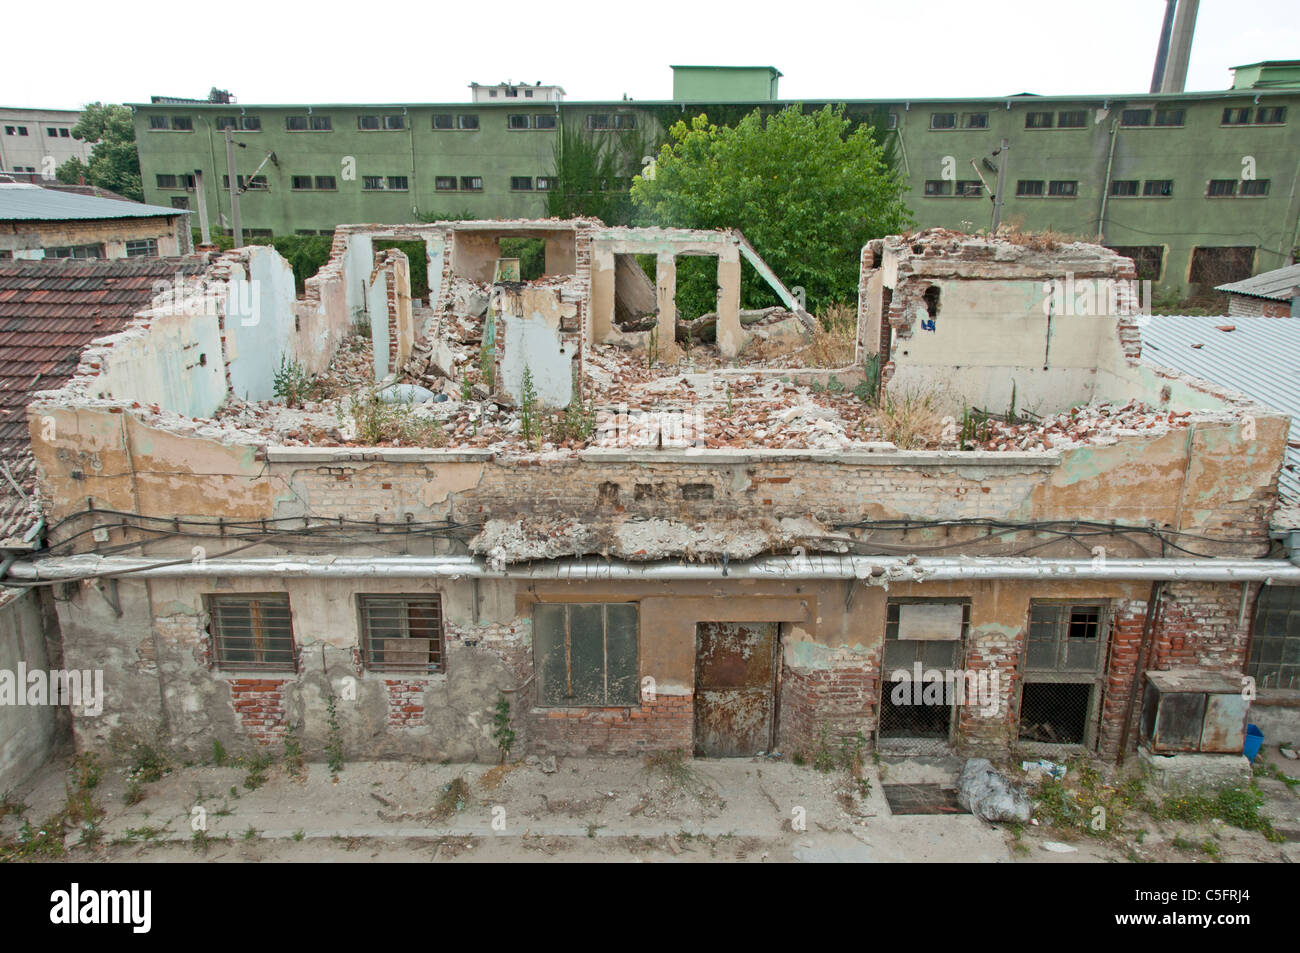 Mattoni vecchi demolito palazzo. Immagine Horisontal Foto Stock